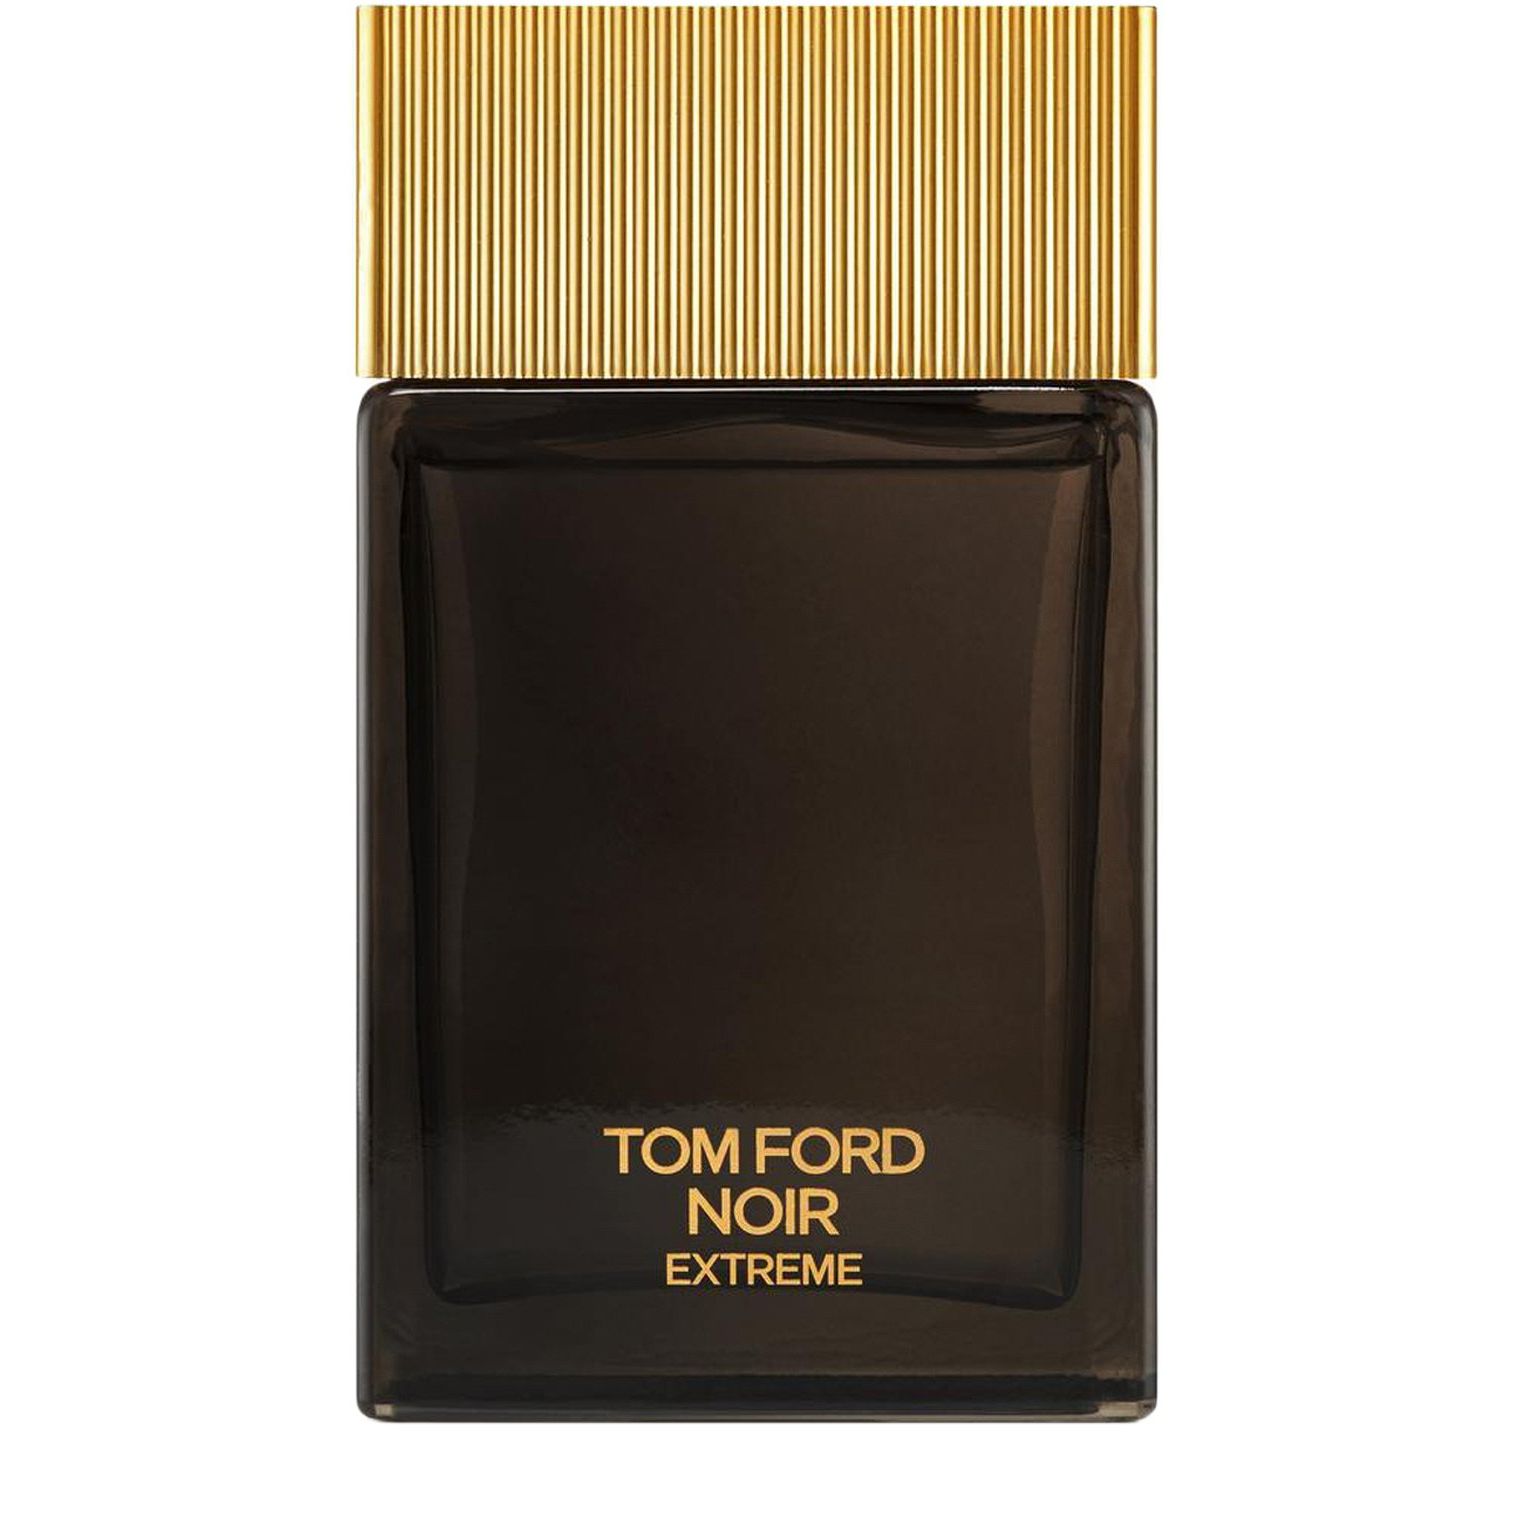 Вода парфюмерная Tom Ford Noir Extreme Eau De Parfum, мужская, 100 мл духи tom ford noir extreme parfum мужские 100 мл